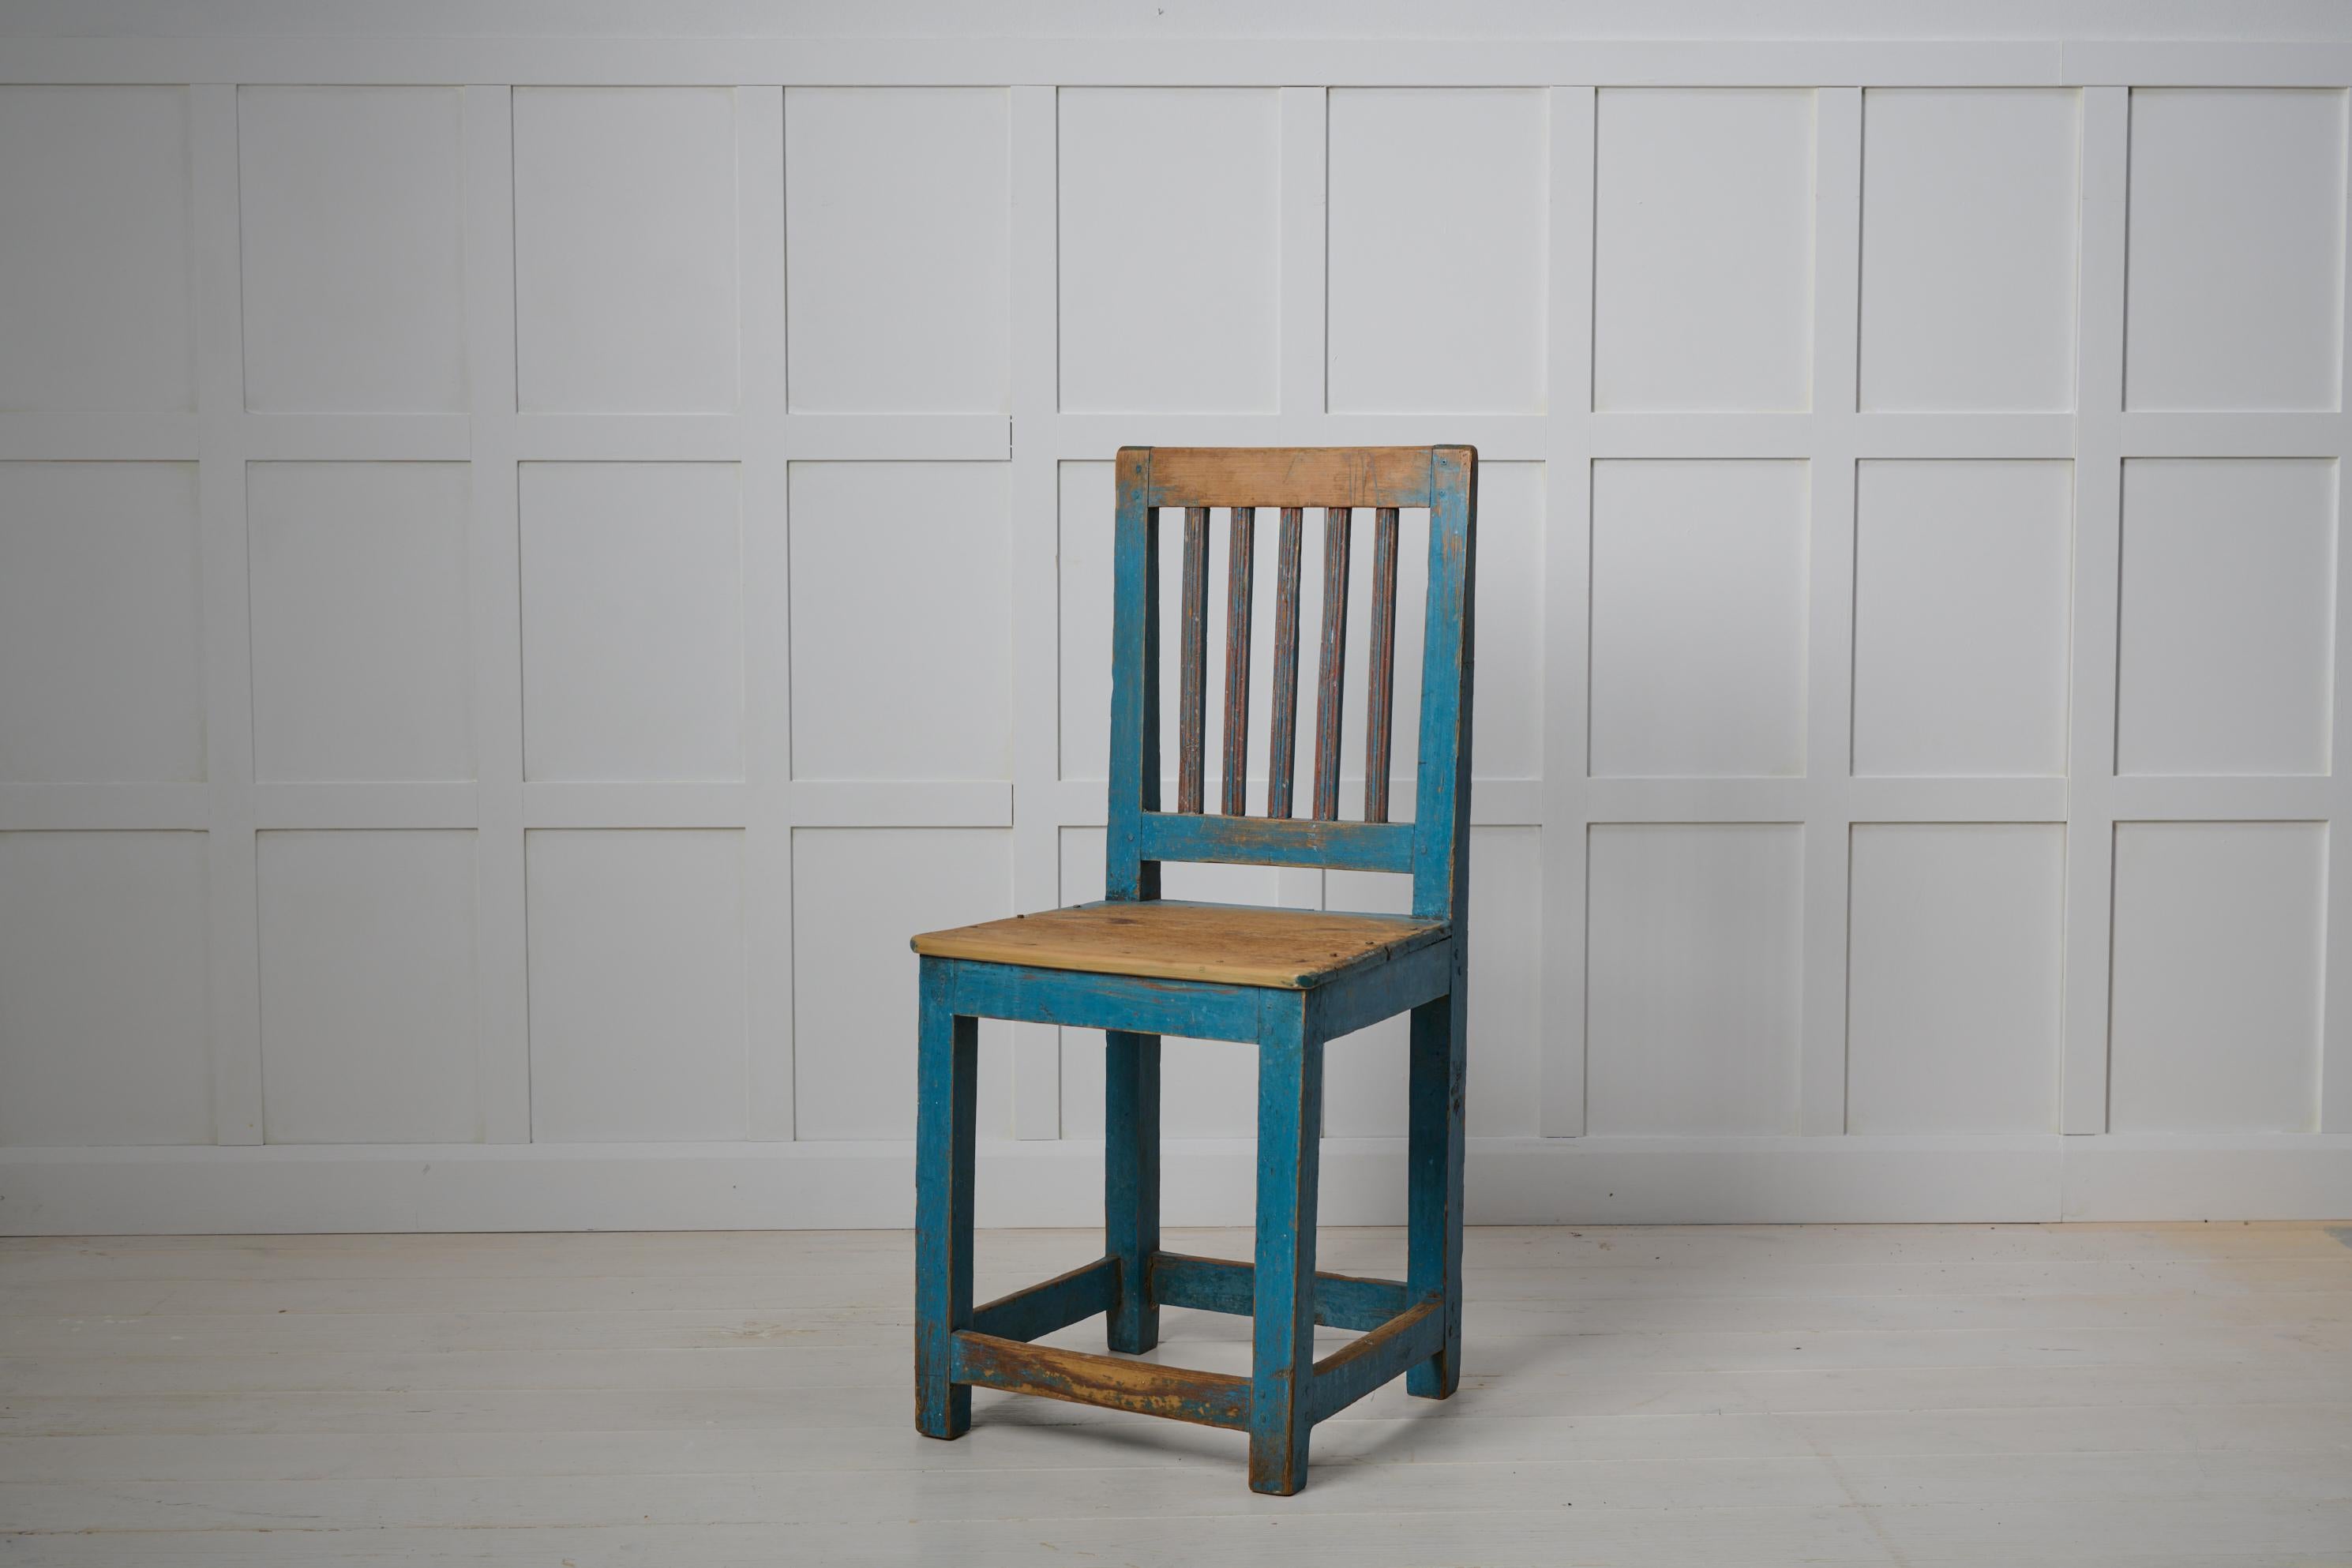 Charmanter schwedischer Landhausstuhl aus Nordschweden, hergestellt um 1820. Der Stuhl ist ein echtes Landhausmöbel mit blauer Originalfarbe. Die Farbe ist nach 200 Jahren Gebrauch etwas angegriffen und hat Patina angesetzt, was ihr einen charmanten